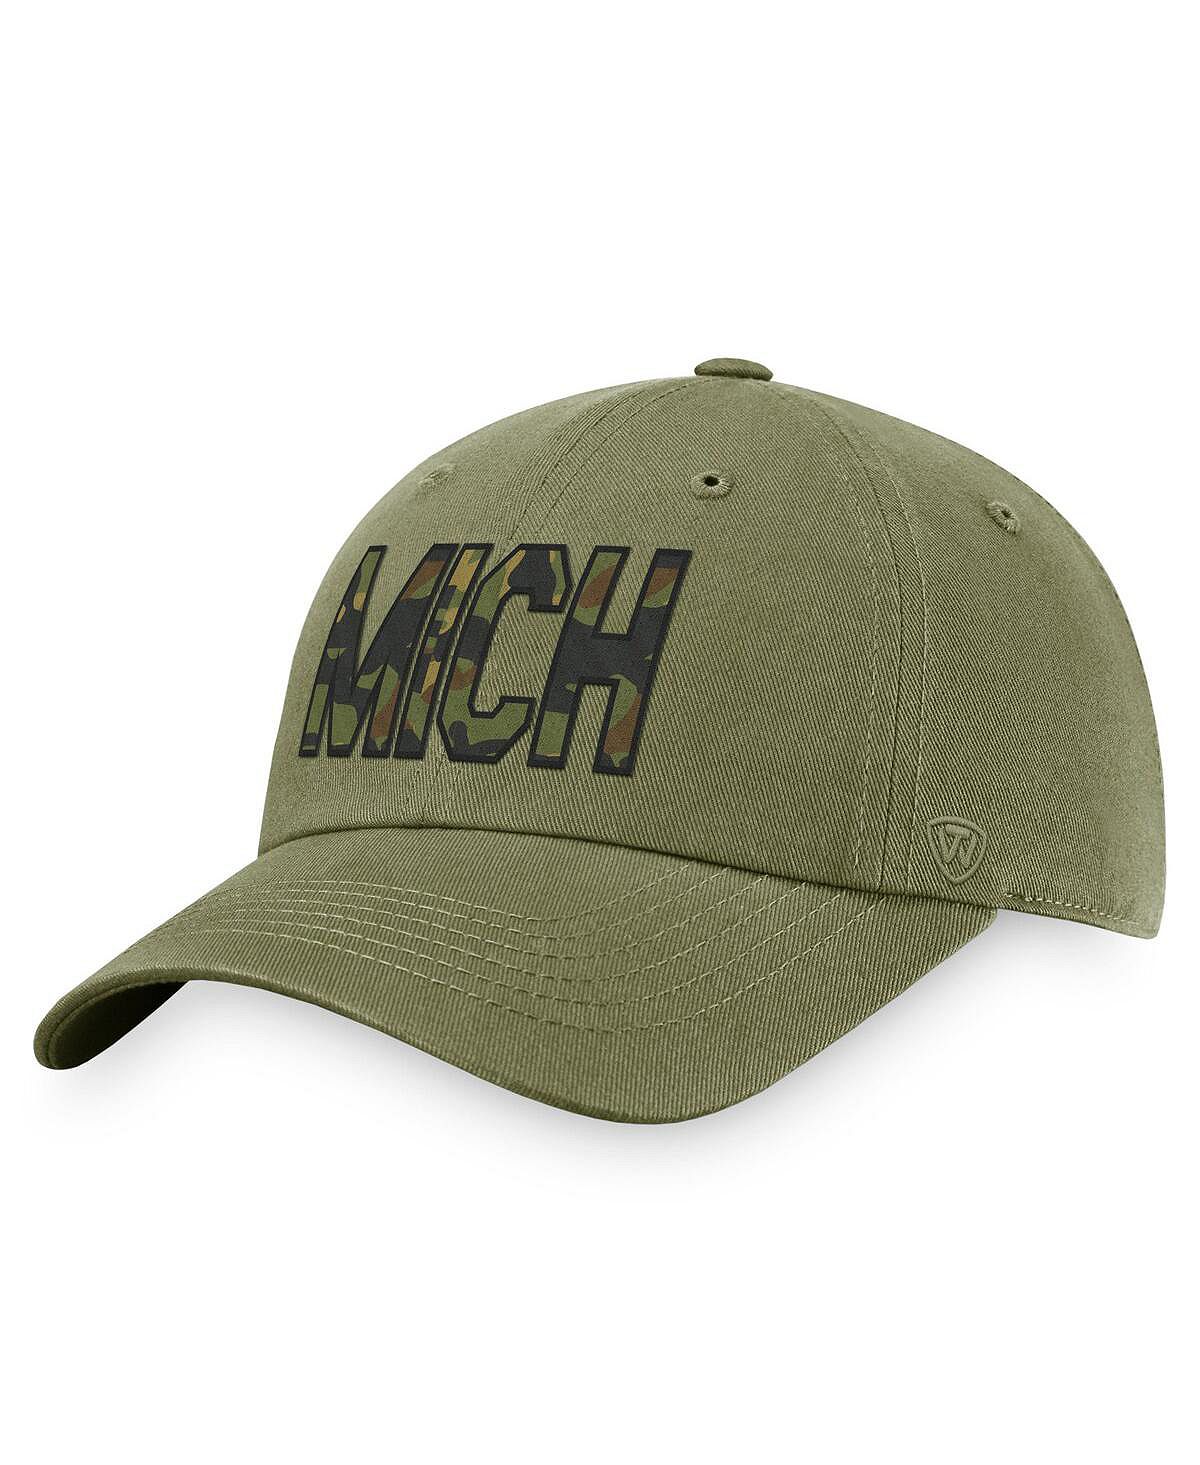 Мужская оливковая регулируемая шляпа Michigan Wolverines OHT в военном стиле Top of the World